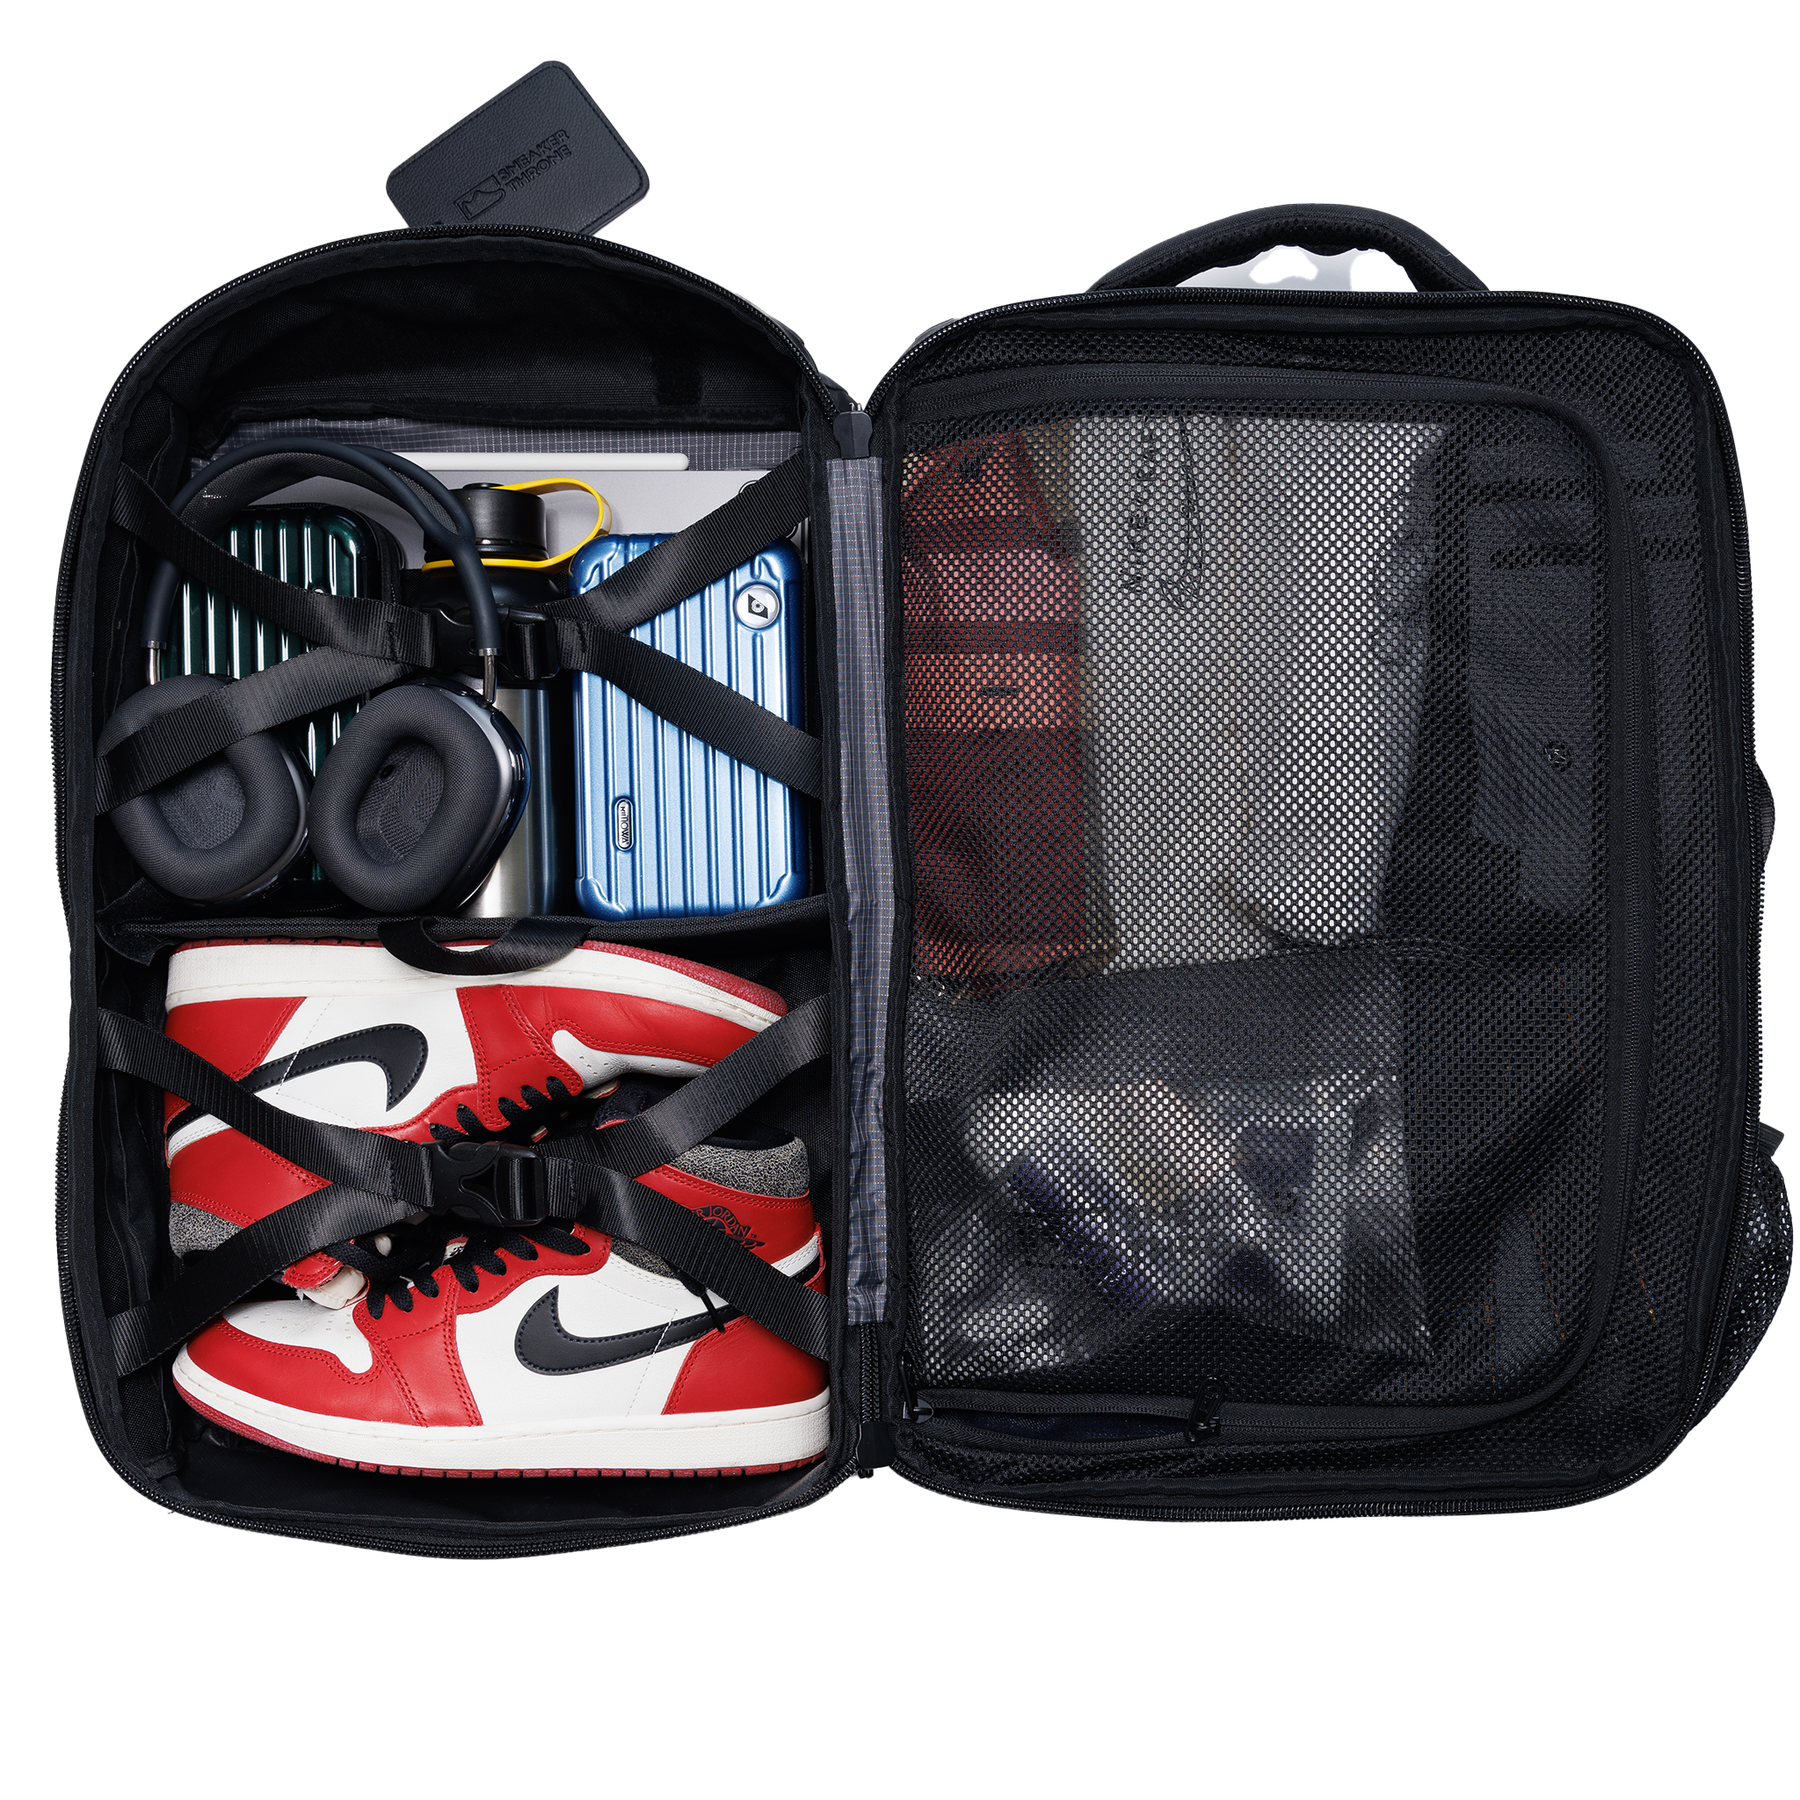 SNEAKER THRONE Travel Throne Sneaker Backpack